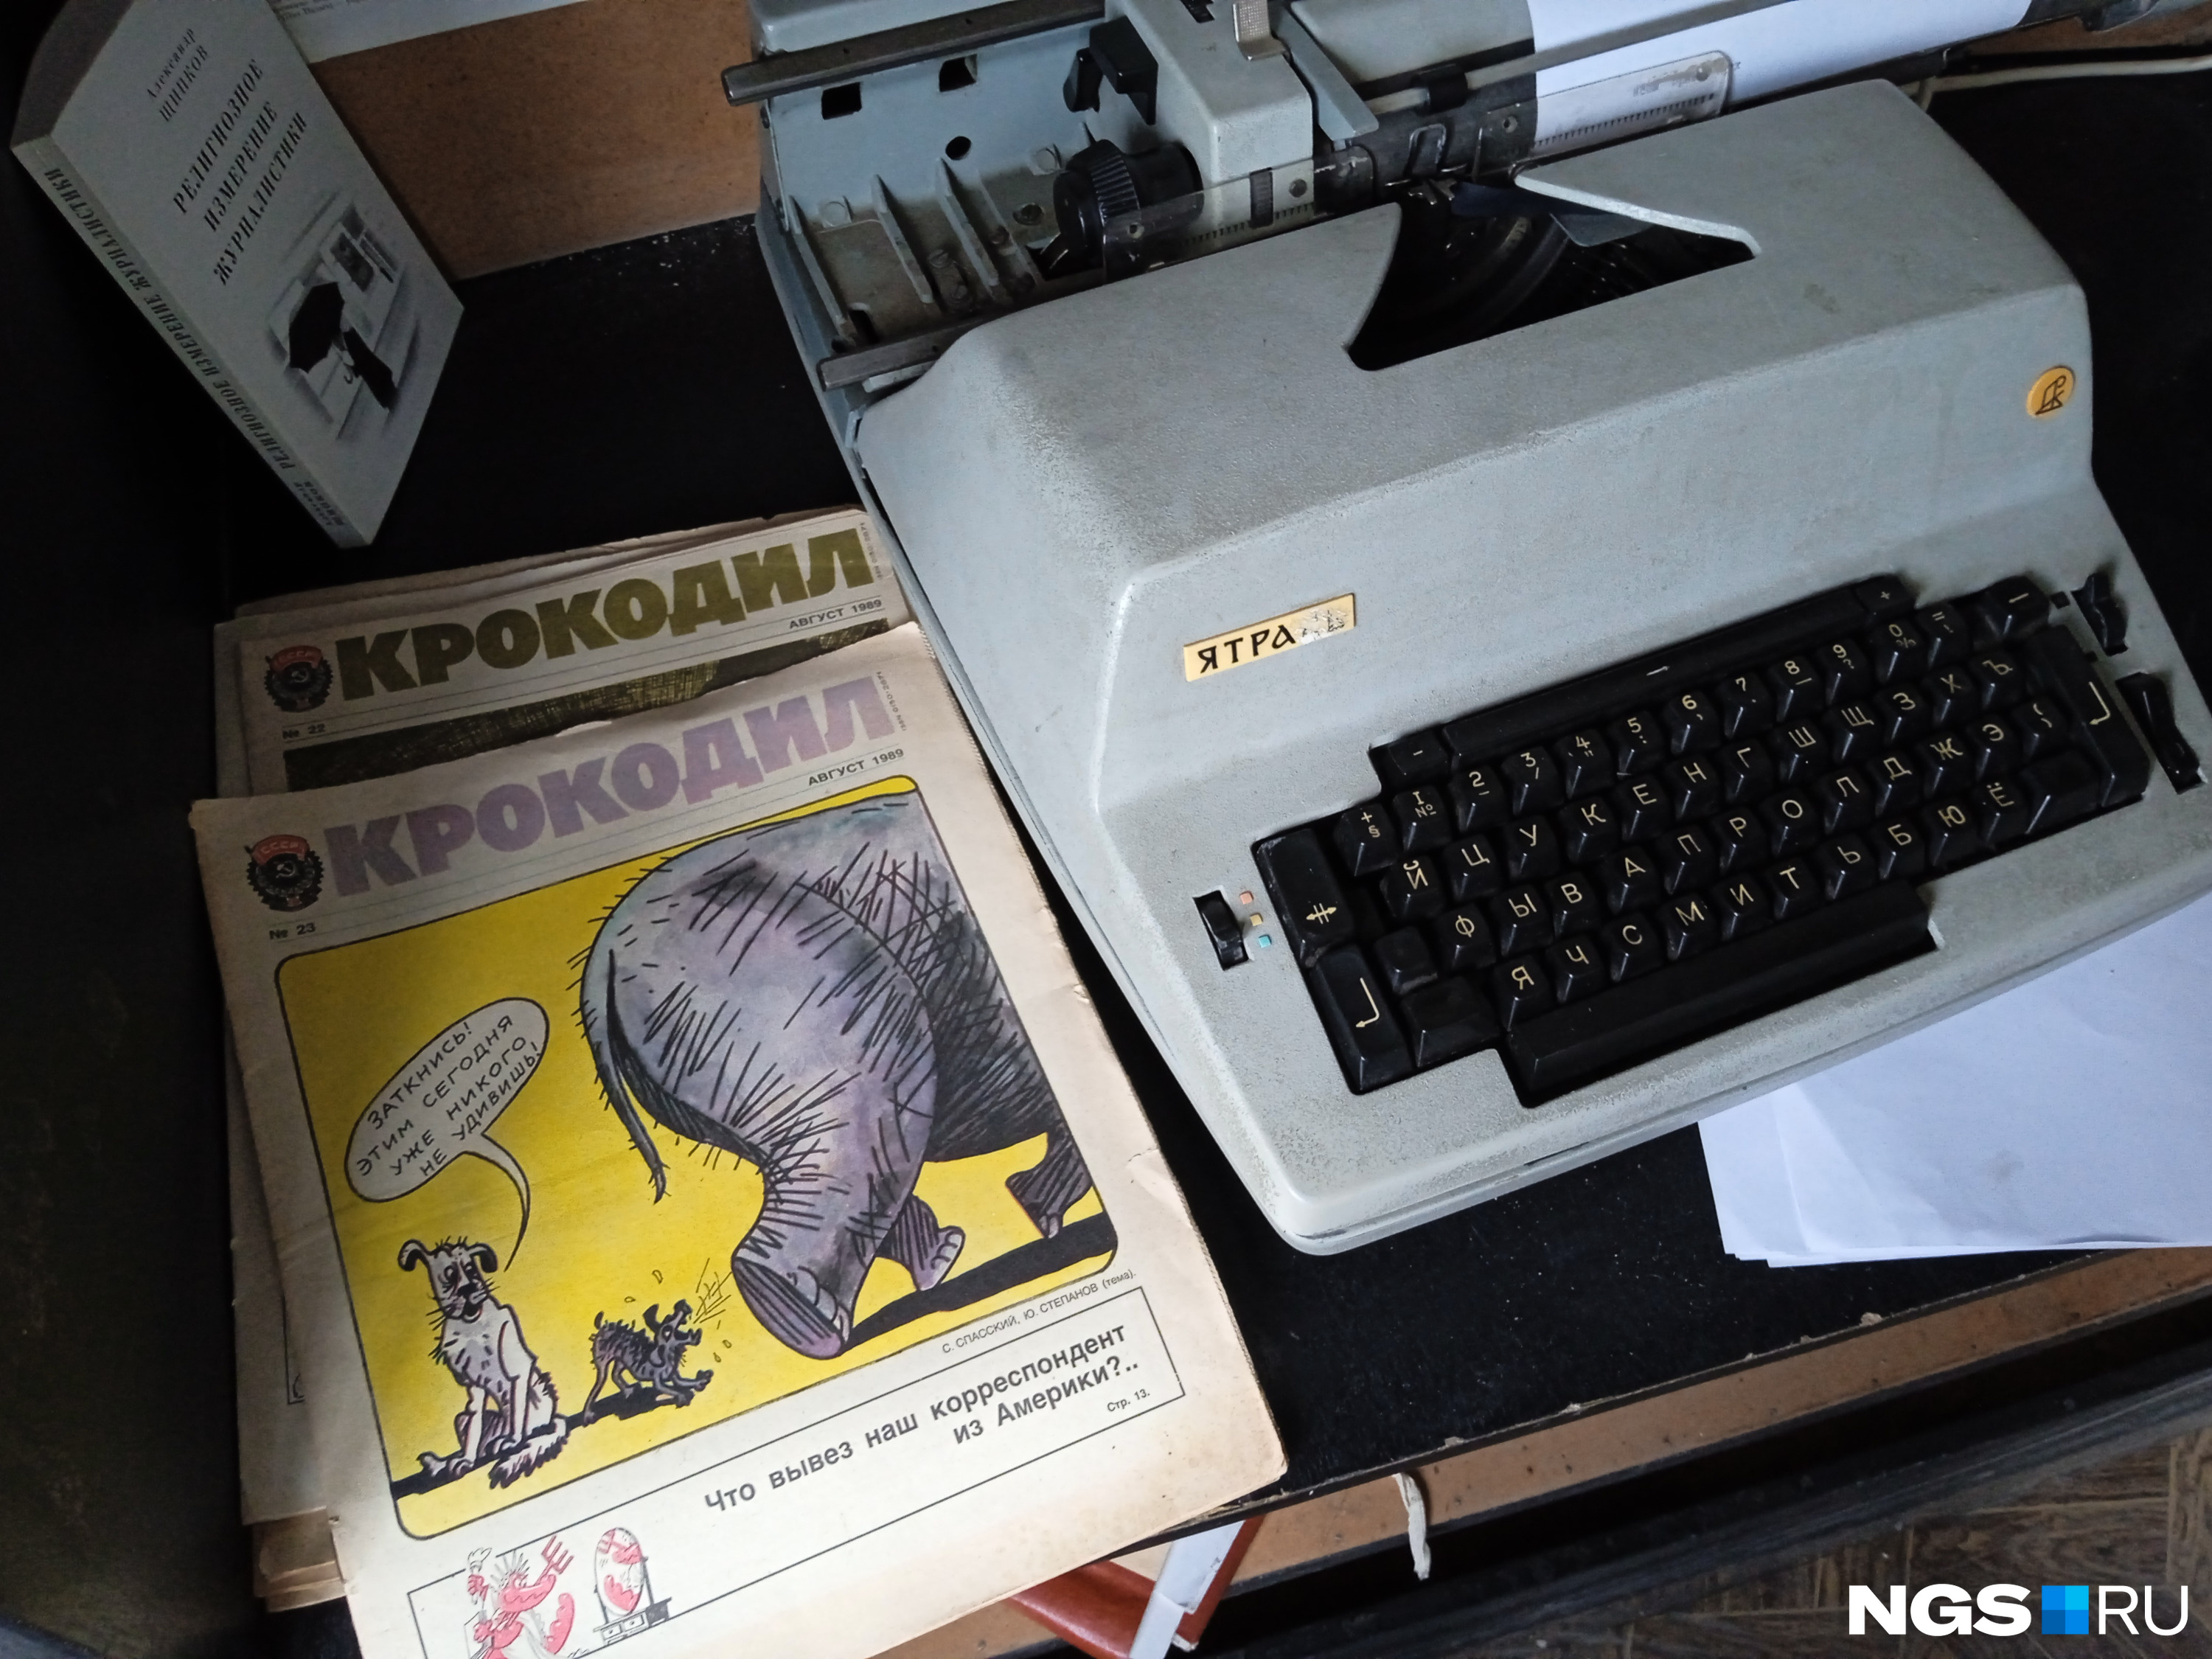 Работающая печатная машинка и журнал «Крокодил» за 1989 год